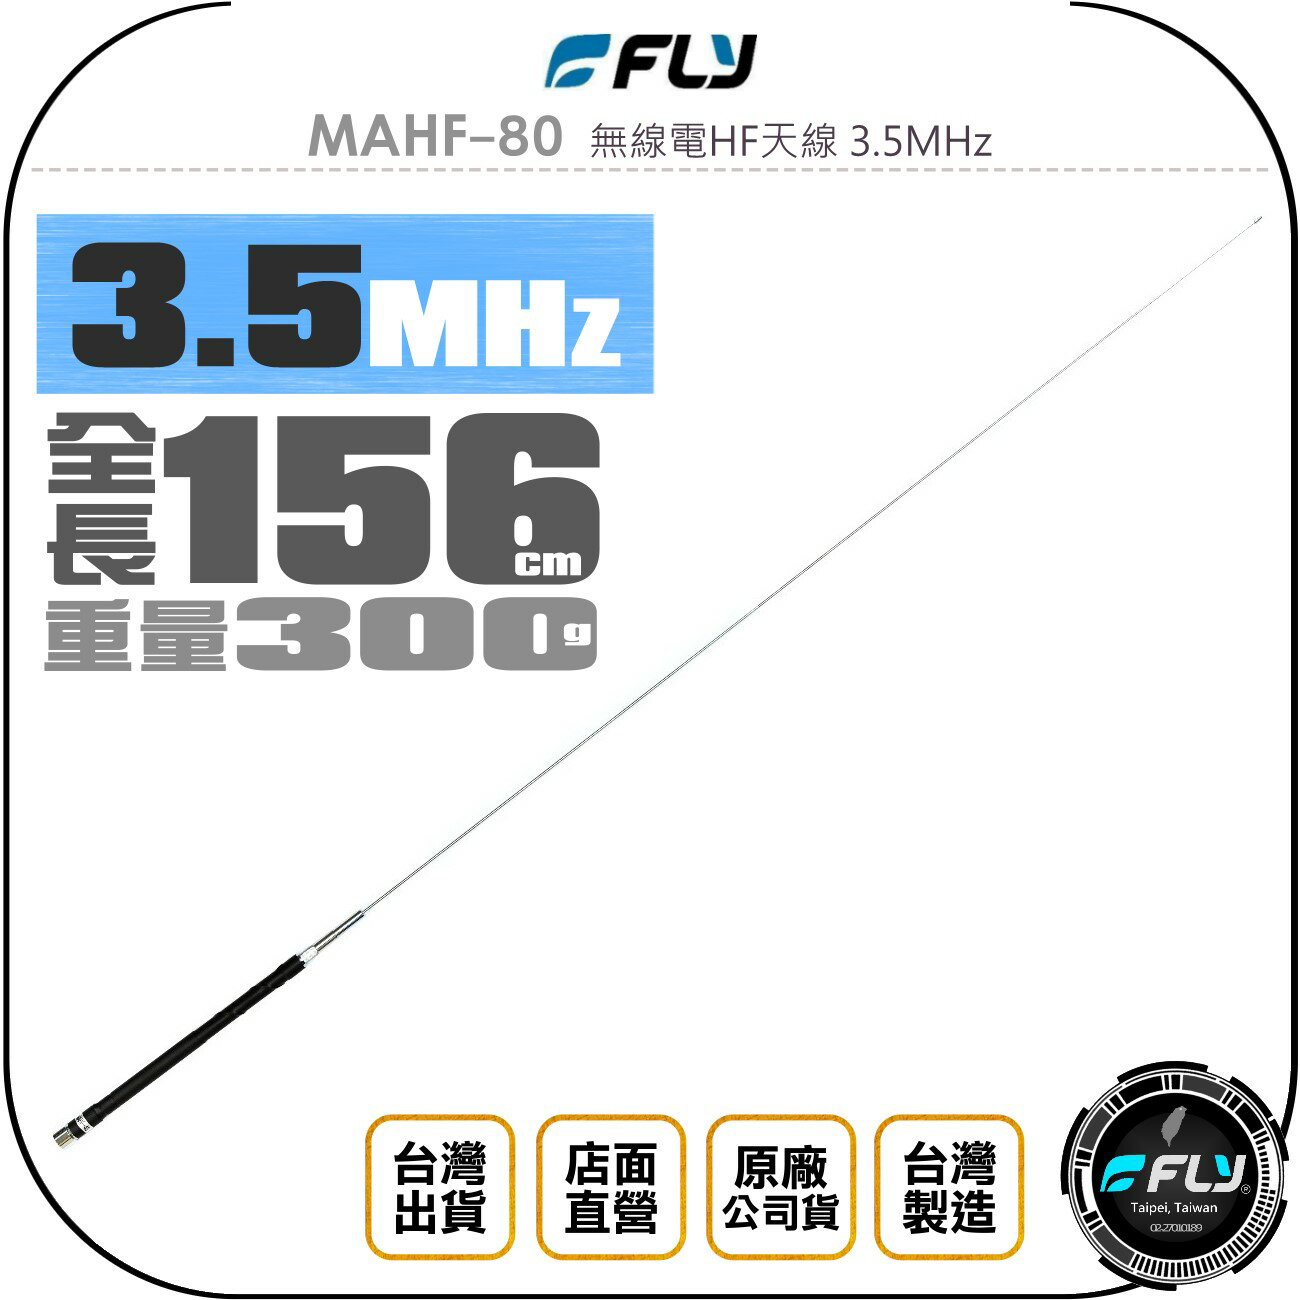 《飛翔無線3C》FLY MAHF-80 無線電HF天線 3.5MHz◉公司貨◉156cm◉適用 HF 短波機◉台灣製造